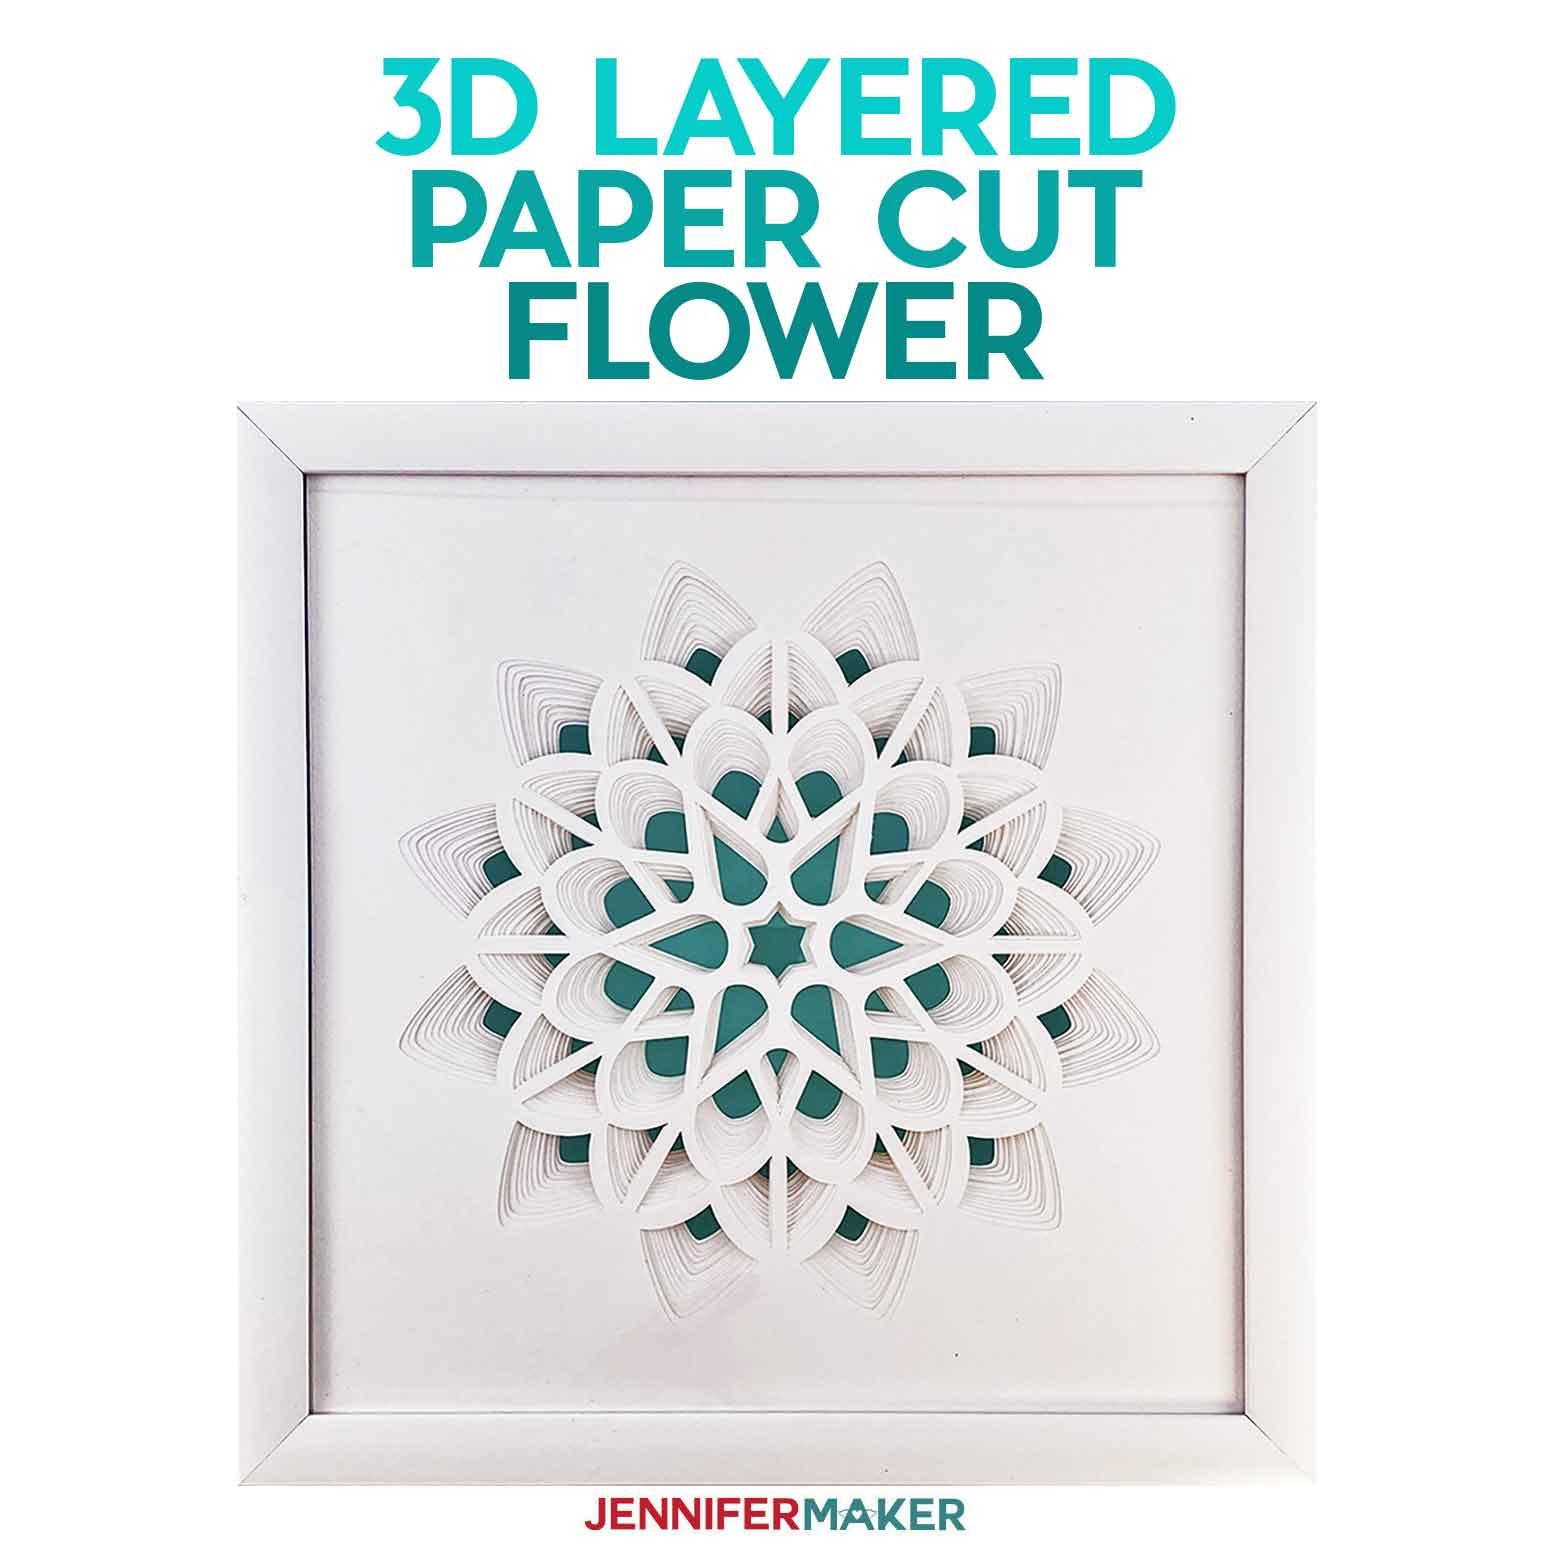 3D Layered Paper Cut Art: The Flower